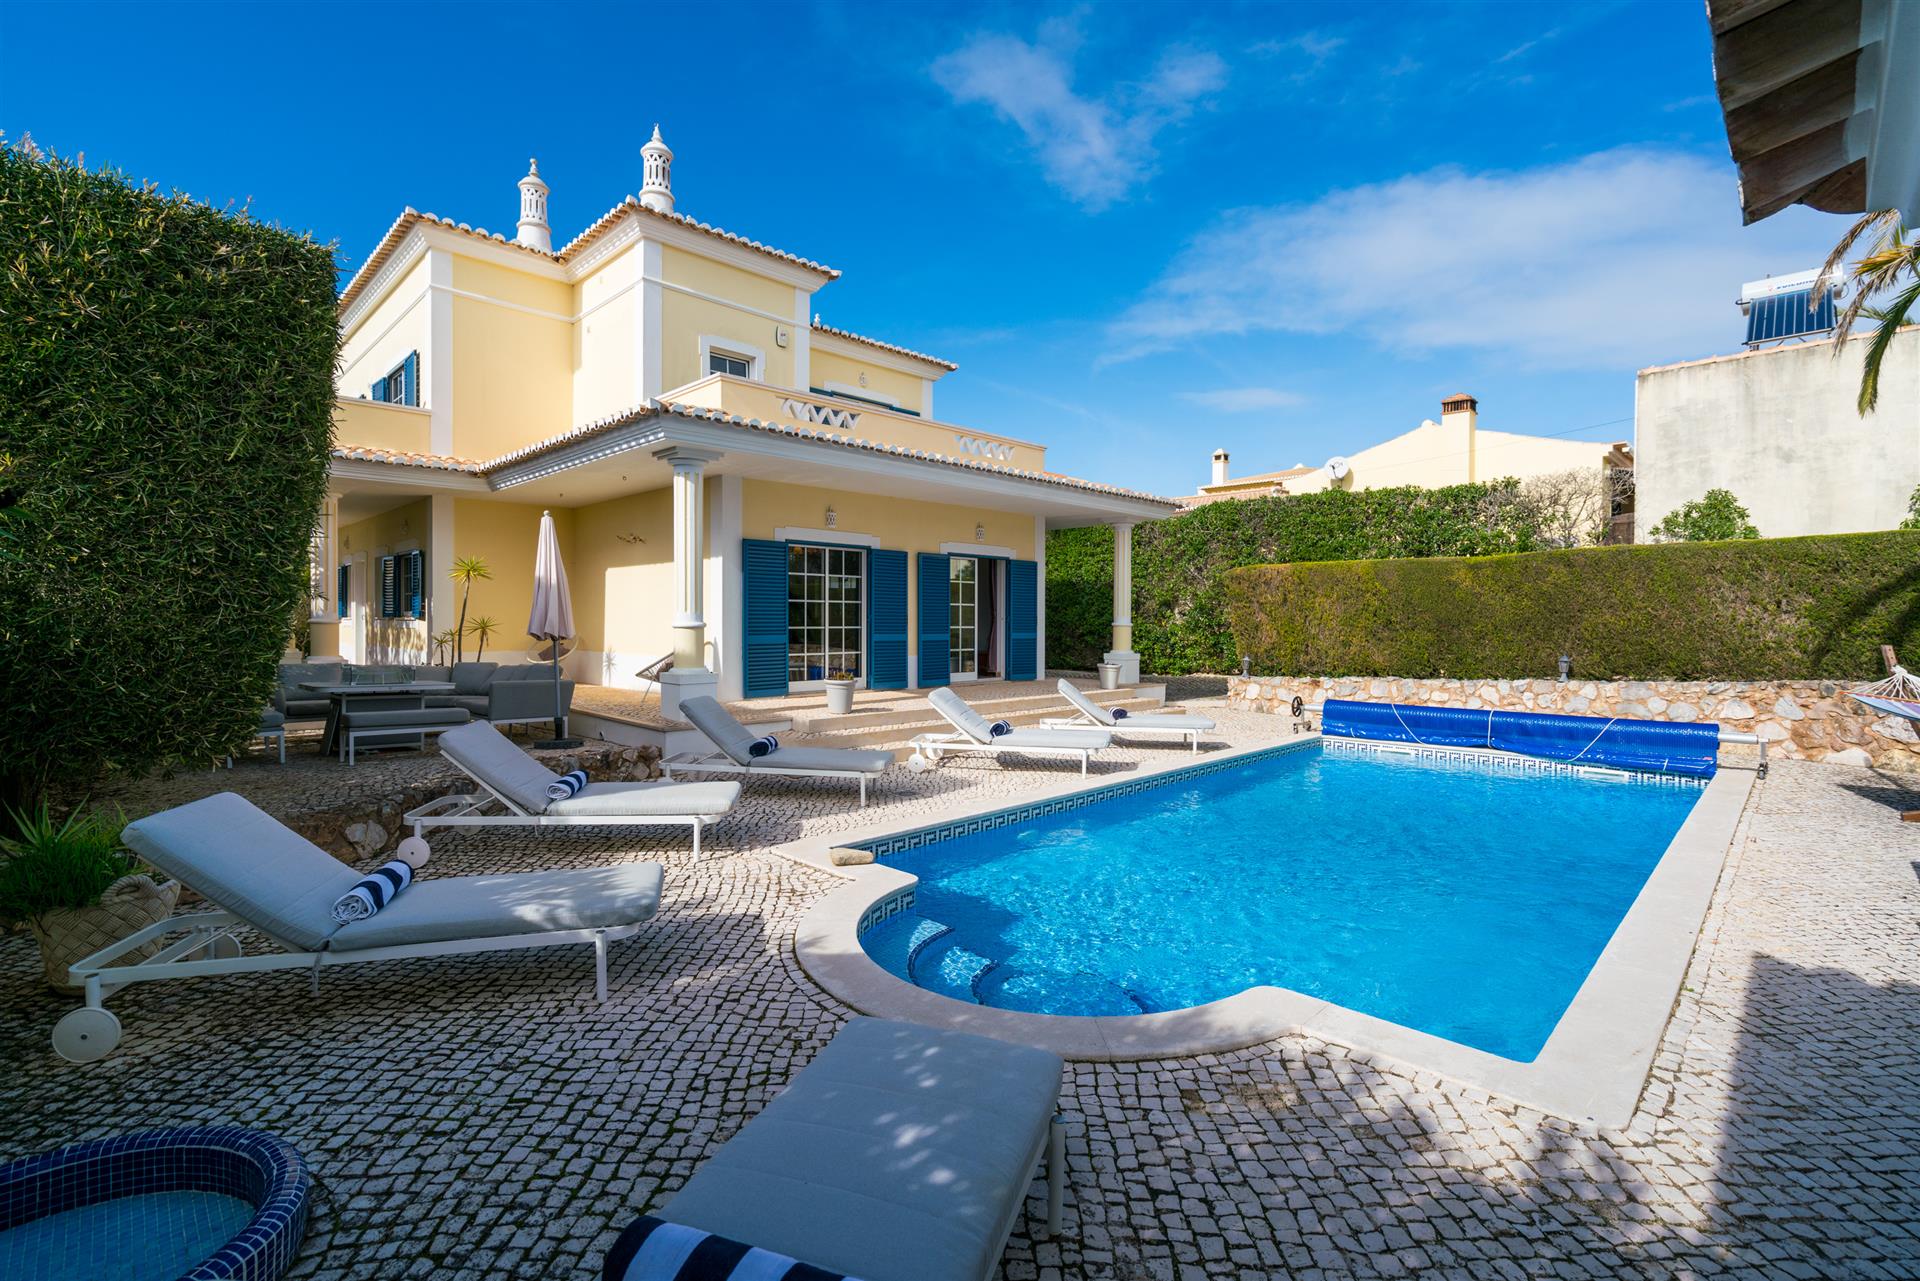 Sjelden å markedsføre vakker frittliggende villa med basseng i en av Luz fremste veier